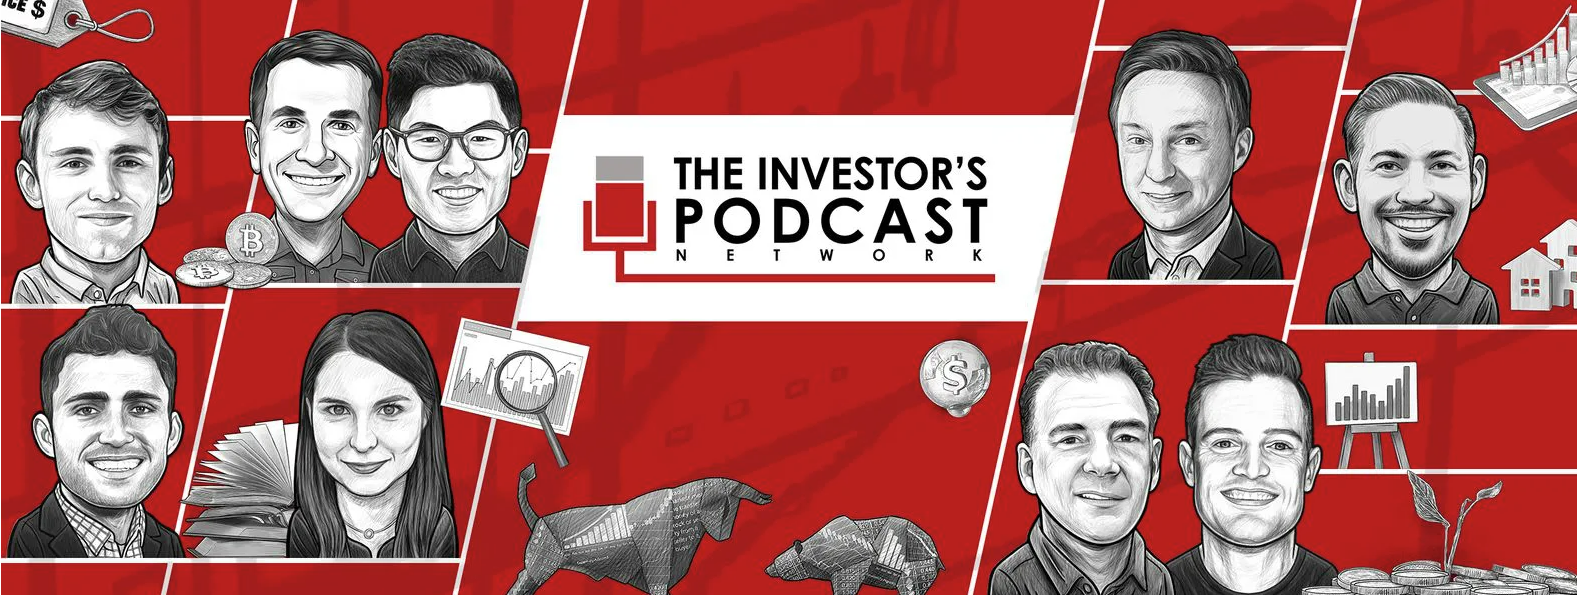 



Các kiến thức được chia sẻ trong The Investor’s Podcast Network cũng không quá khô khan, không khó hiểu, bất kỳ ai cũng có thể xem được.

